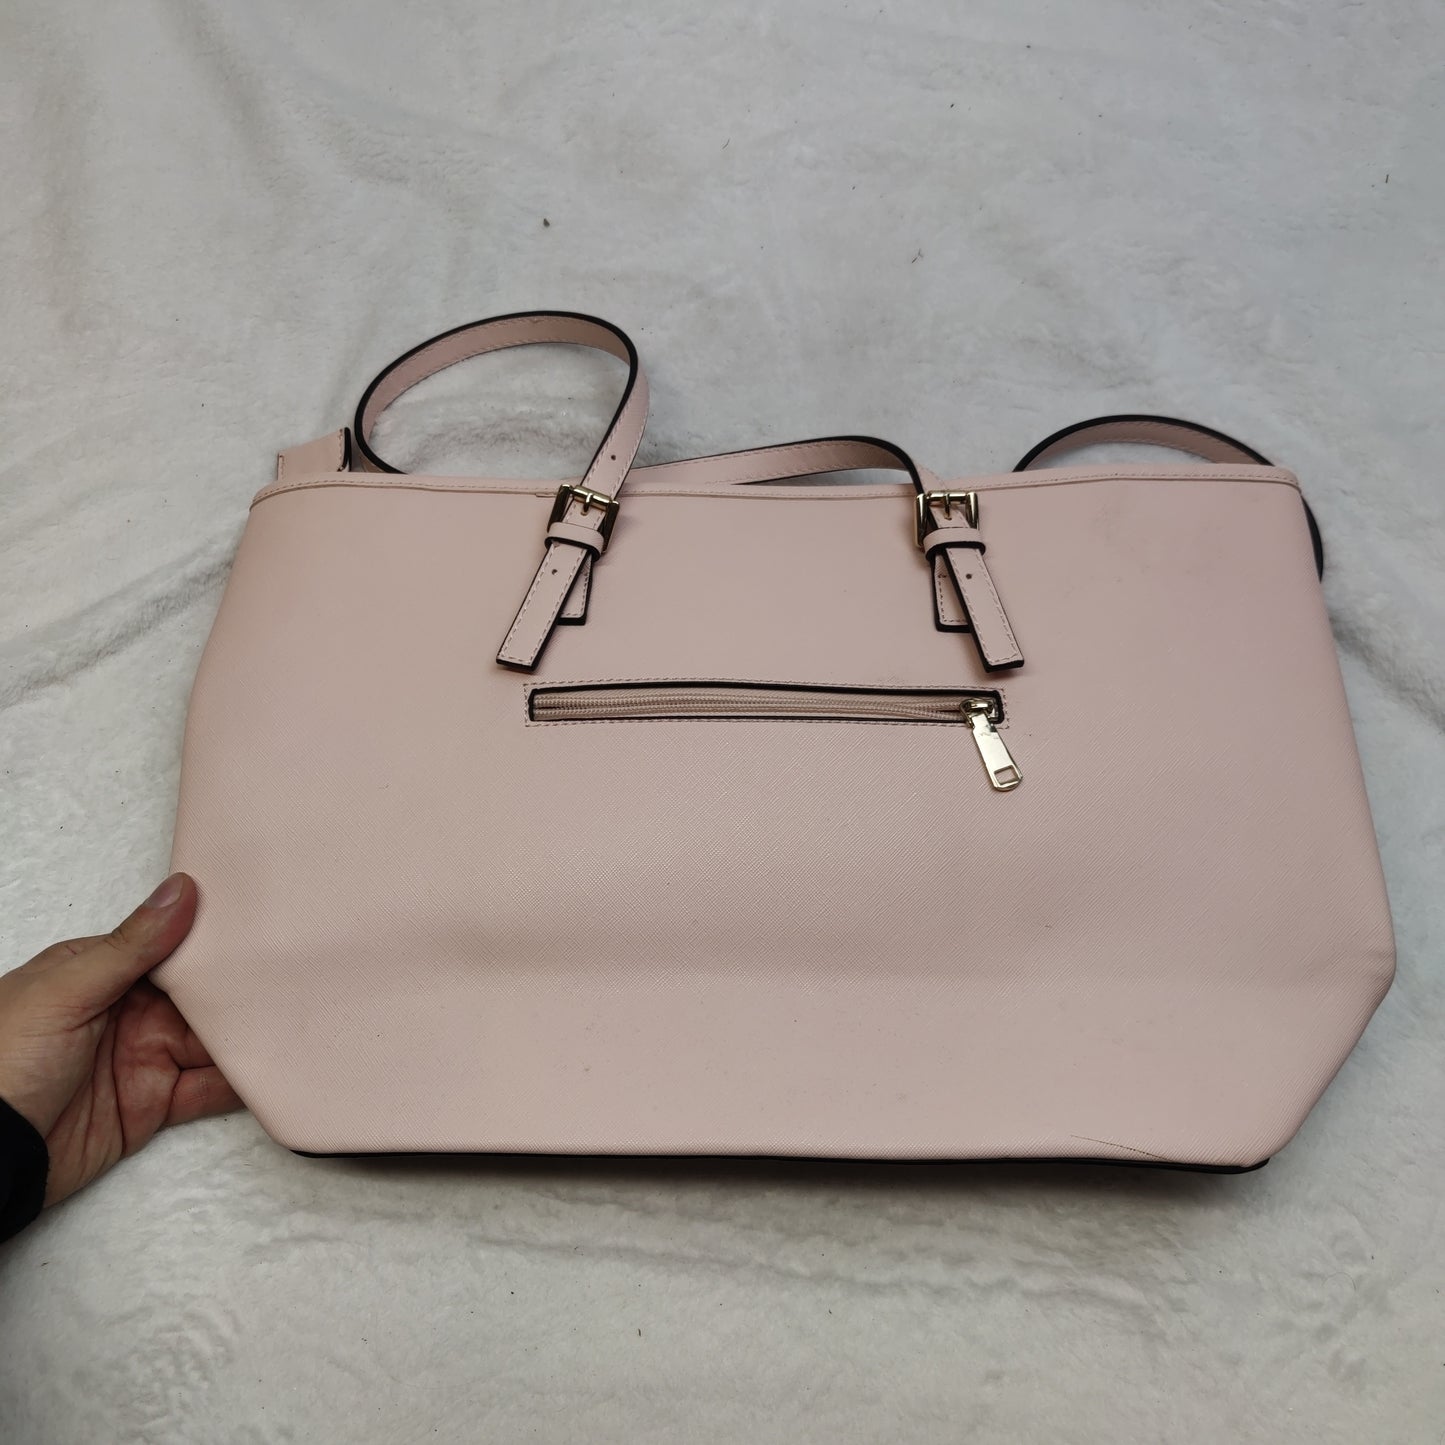 Michael Kors Light Pink Leather Shoulder Tote Bag Handbag Women